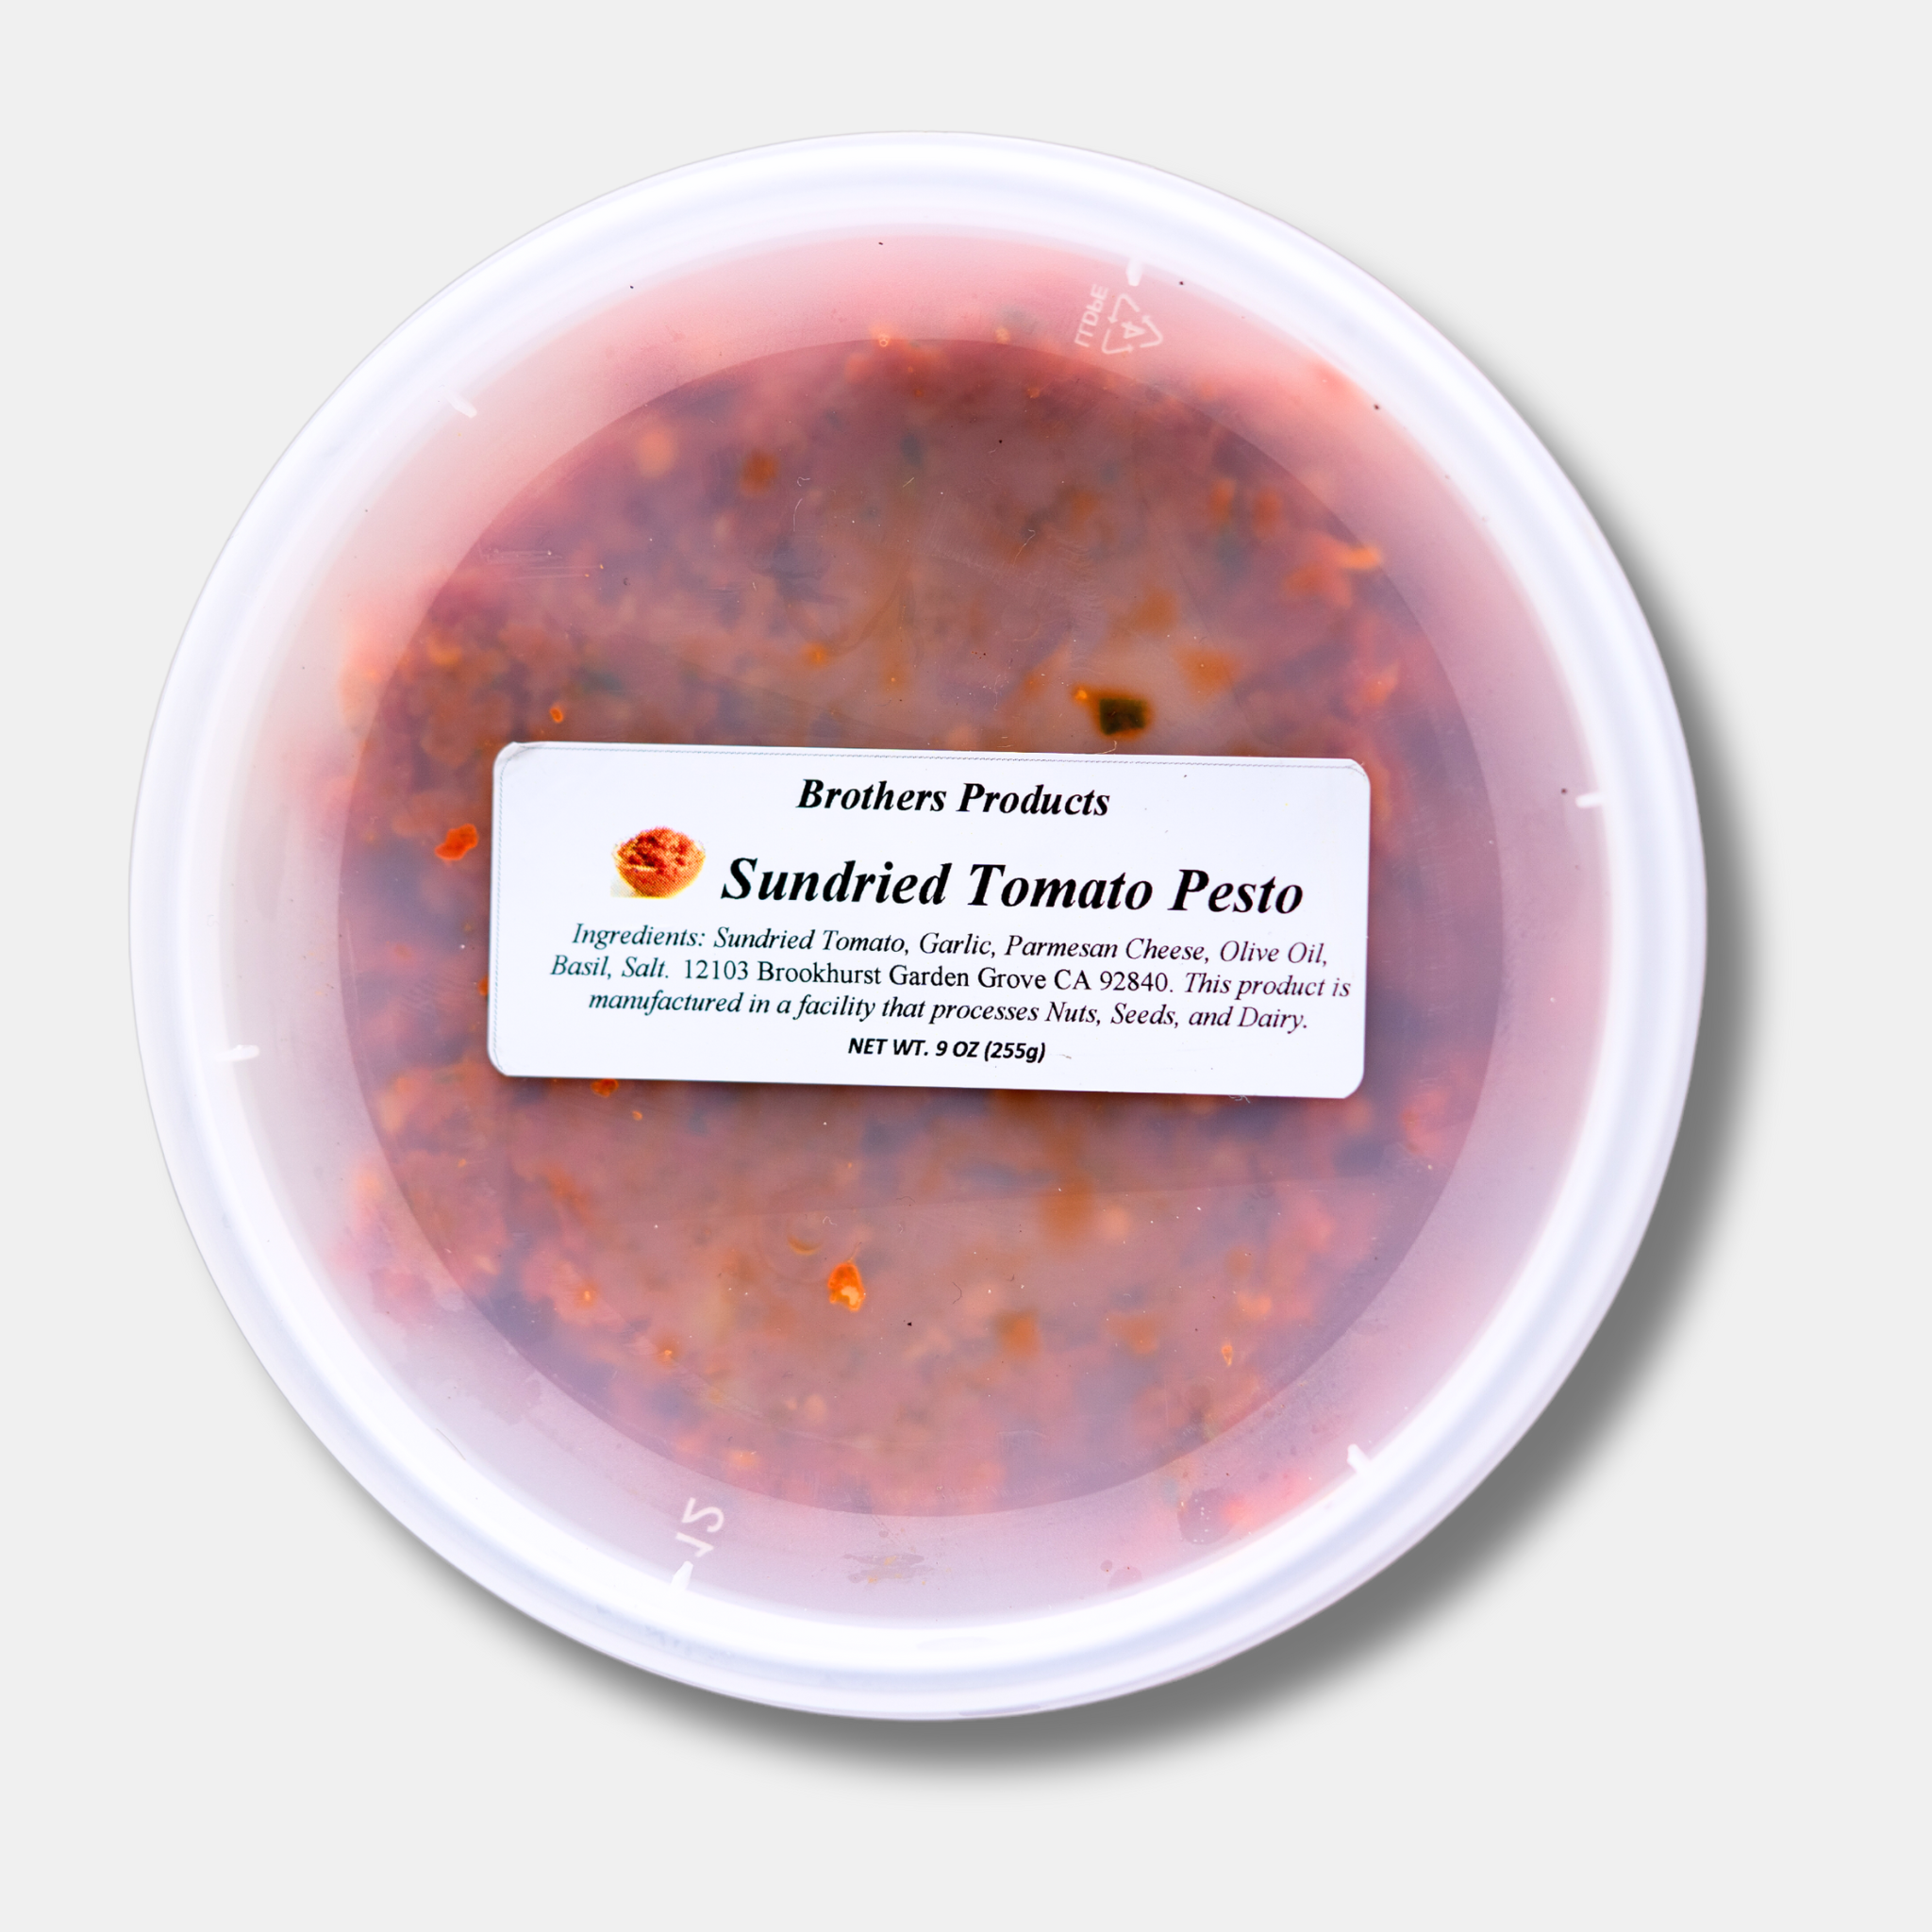 Sundried Tomato Pesto